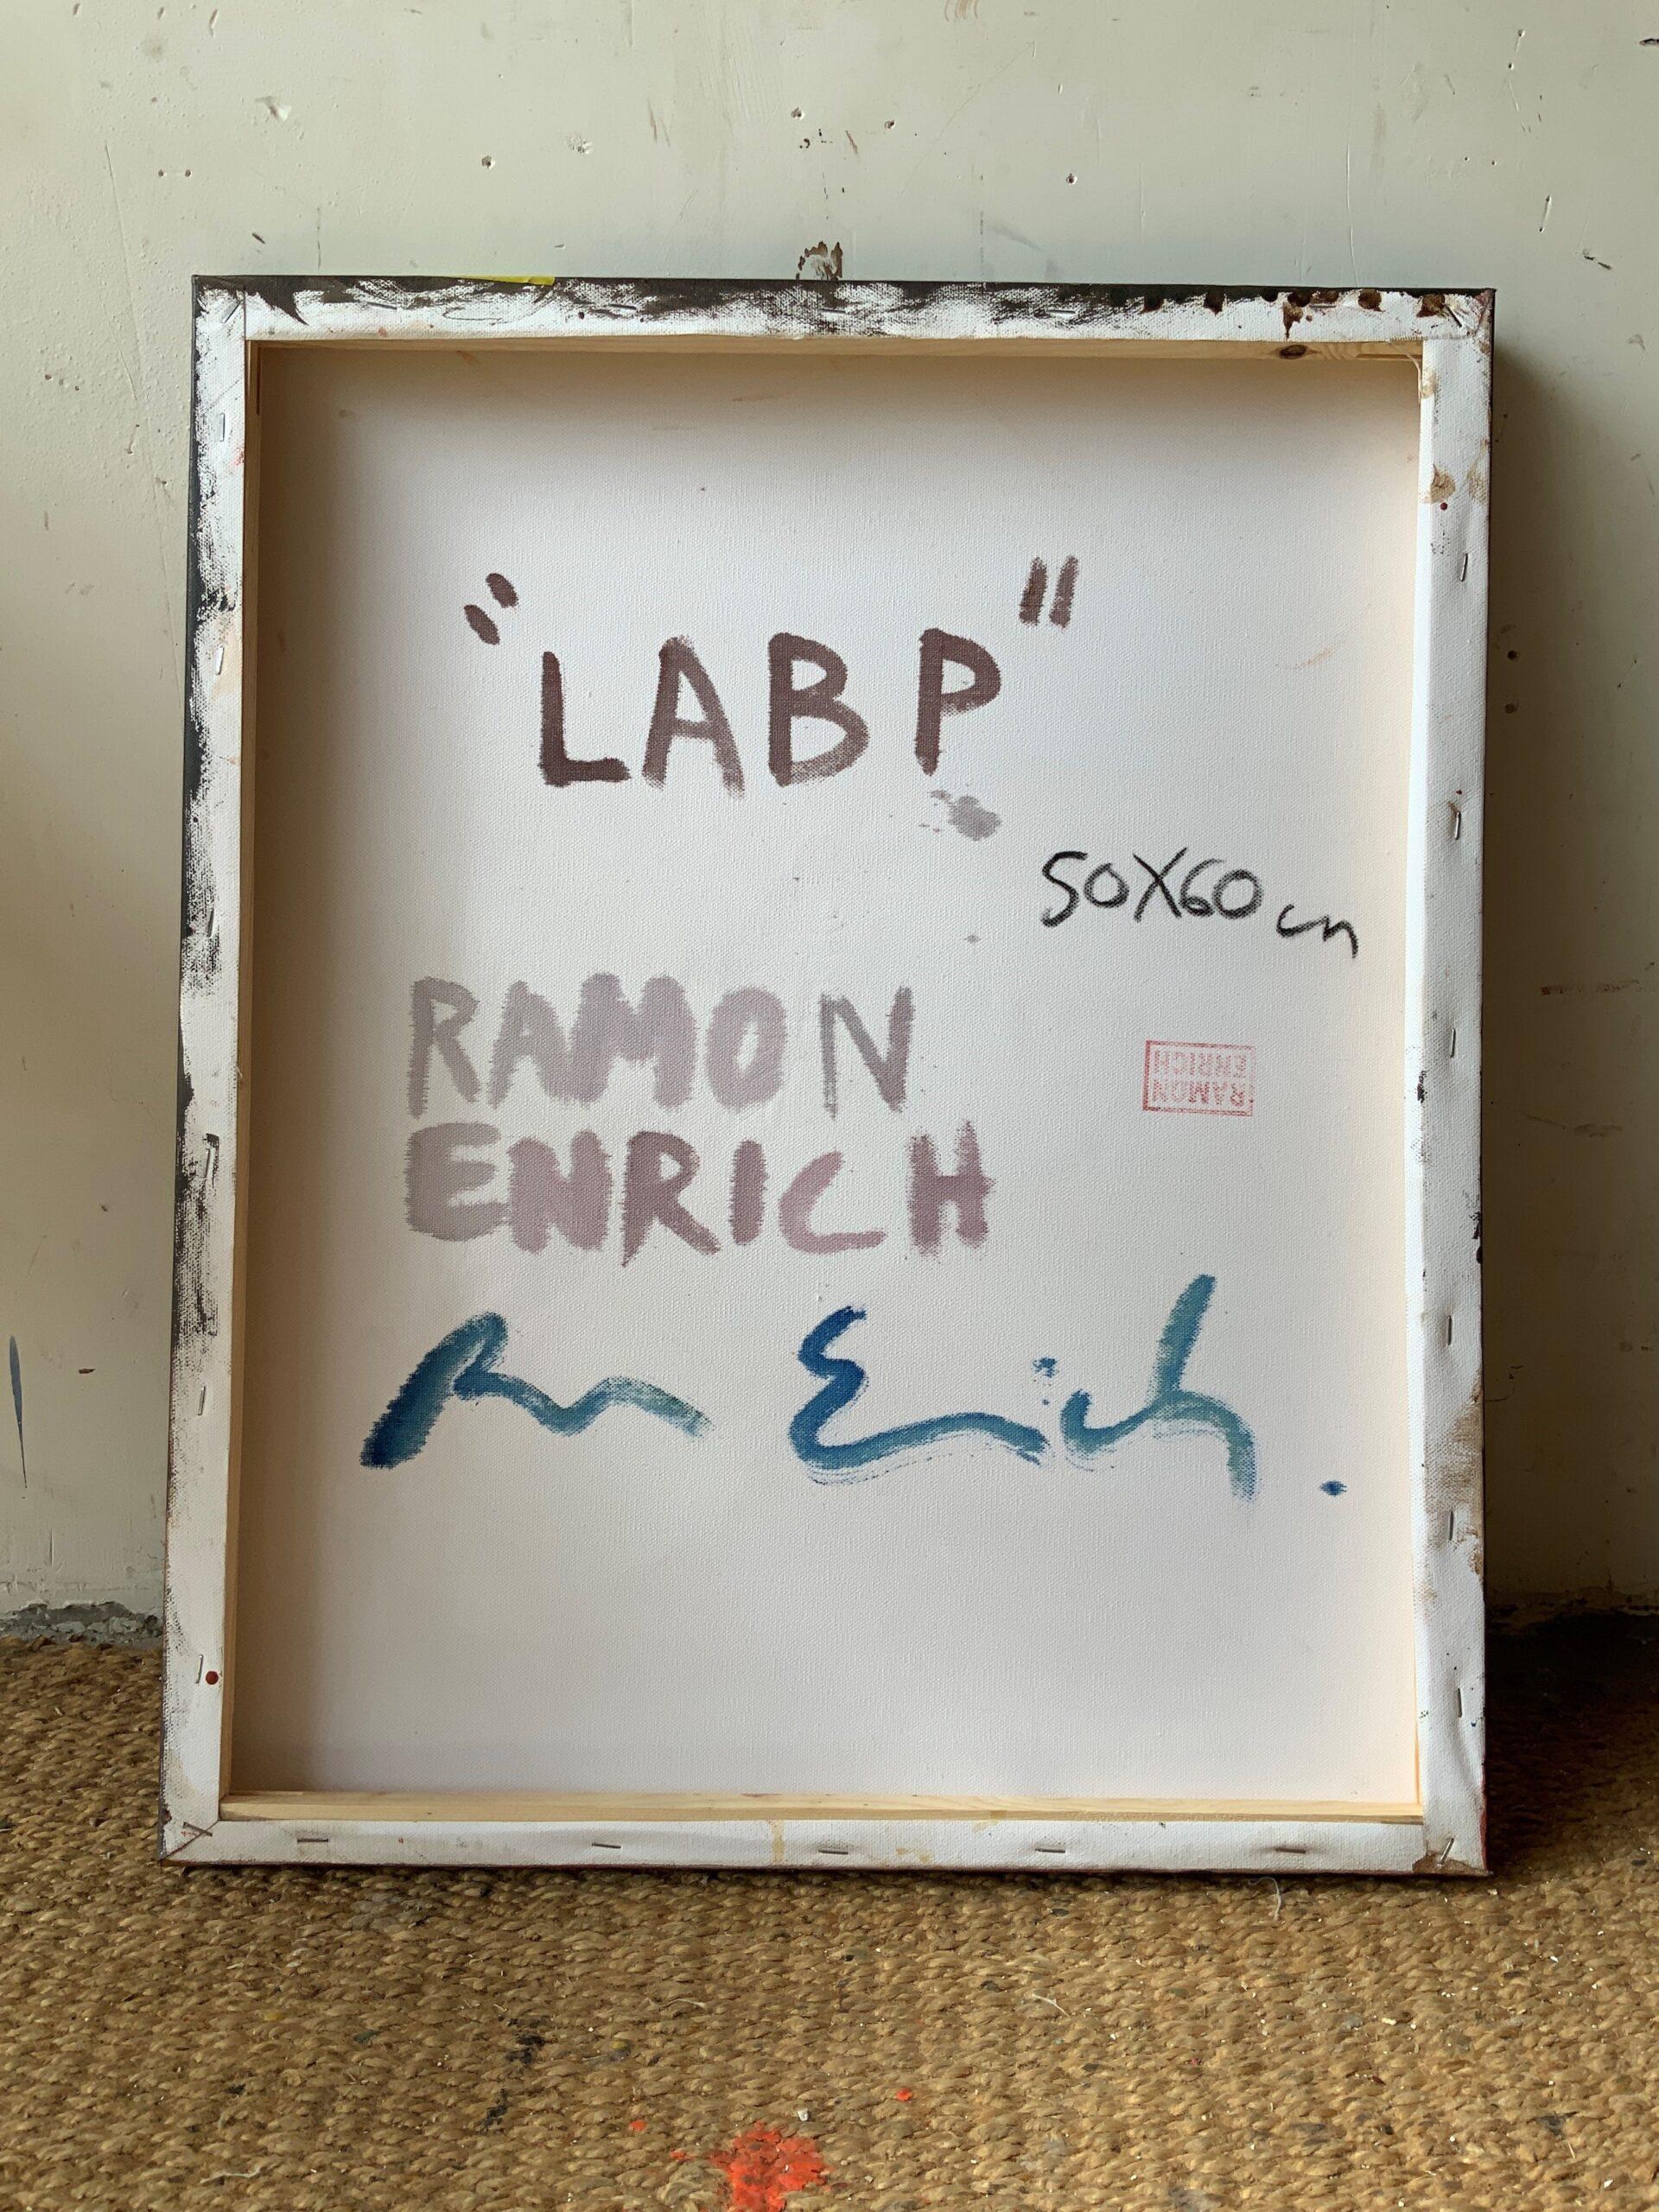 LAB-P by Ramon Enrich - Geometric landscape painting, architecture, warm tones For Sale 4